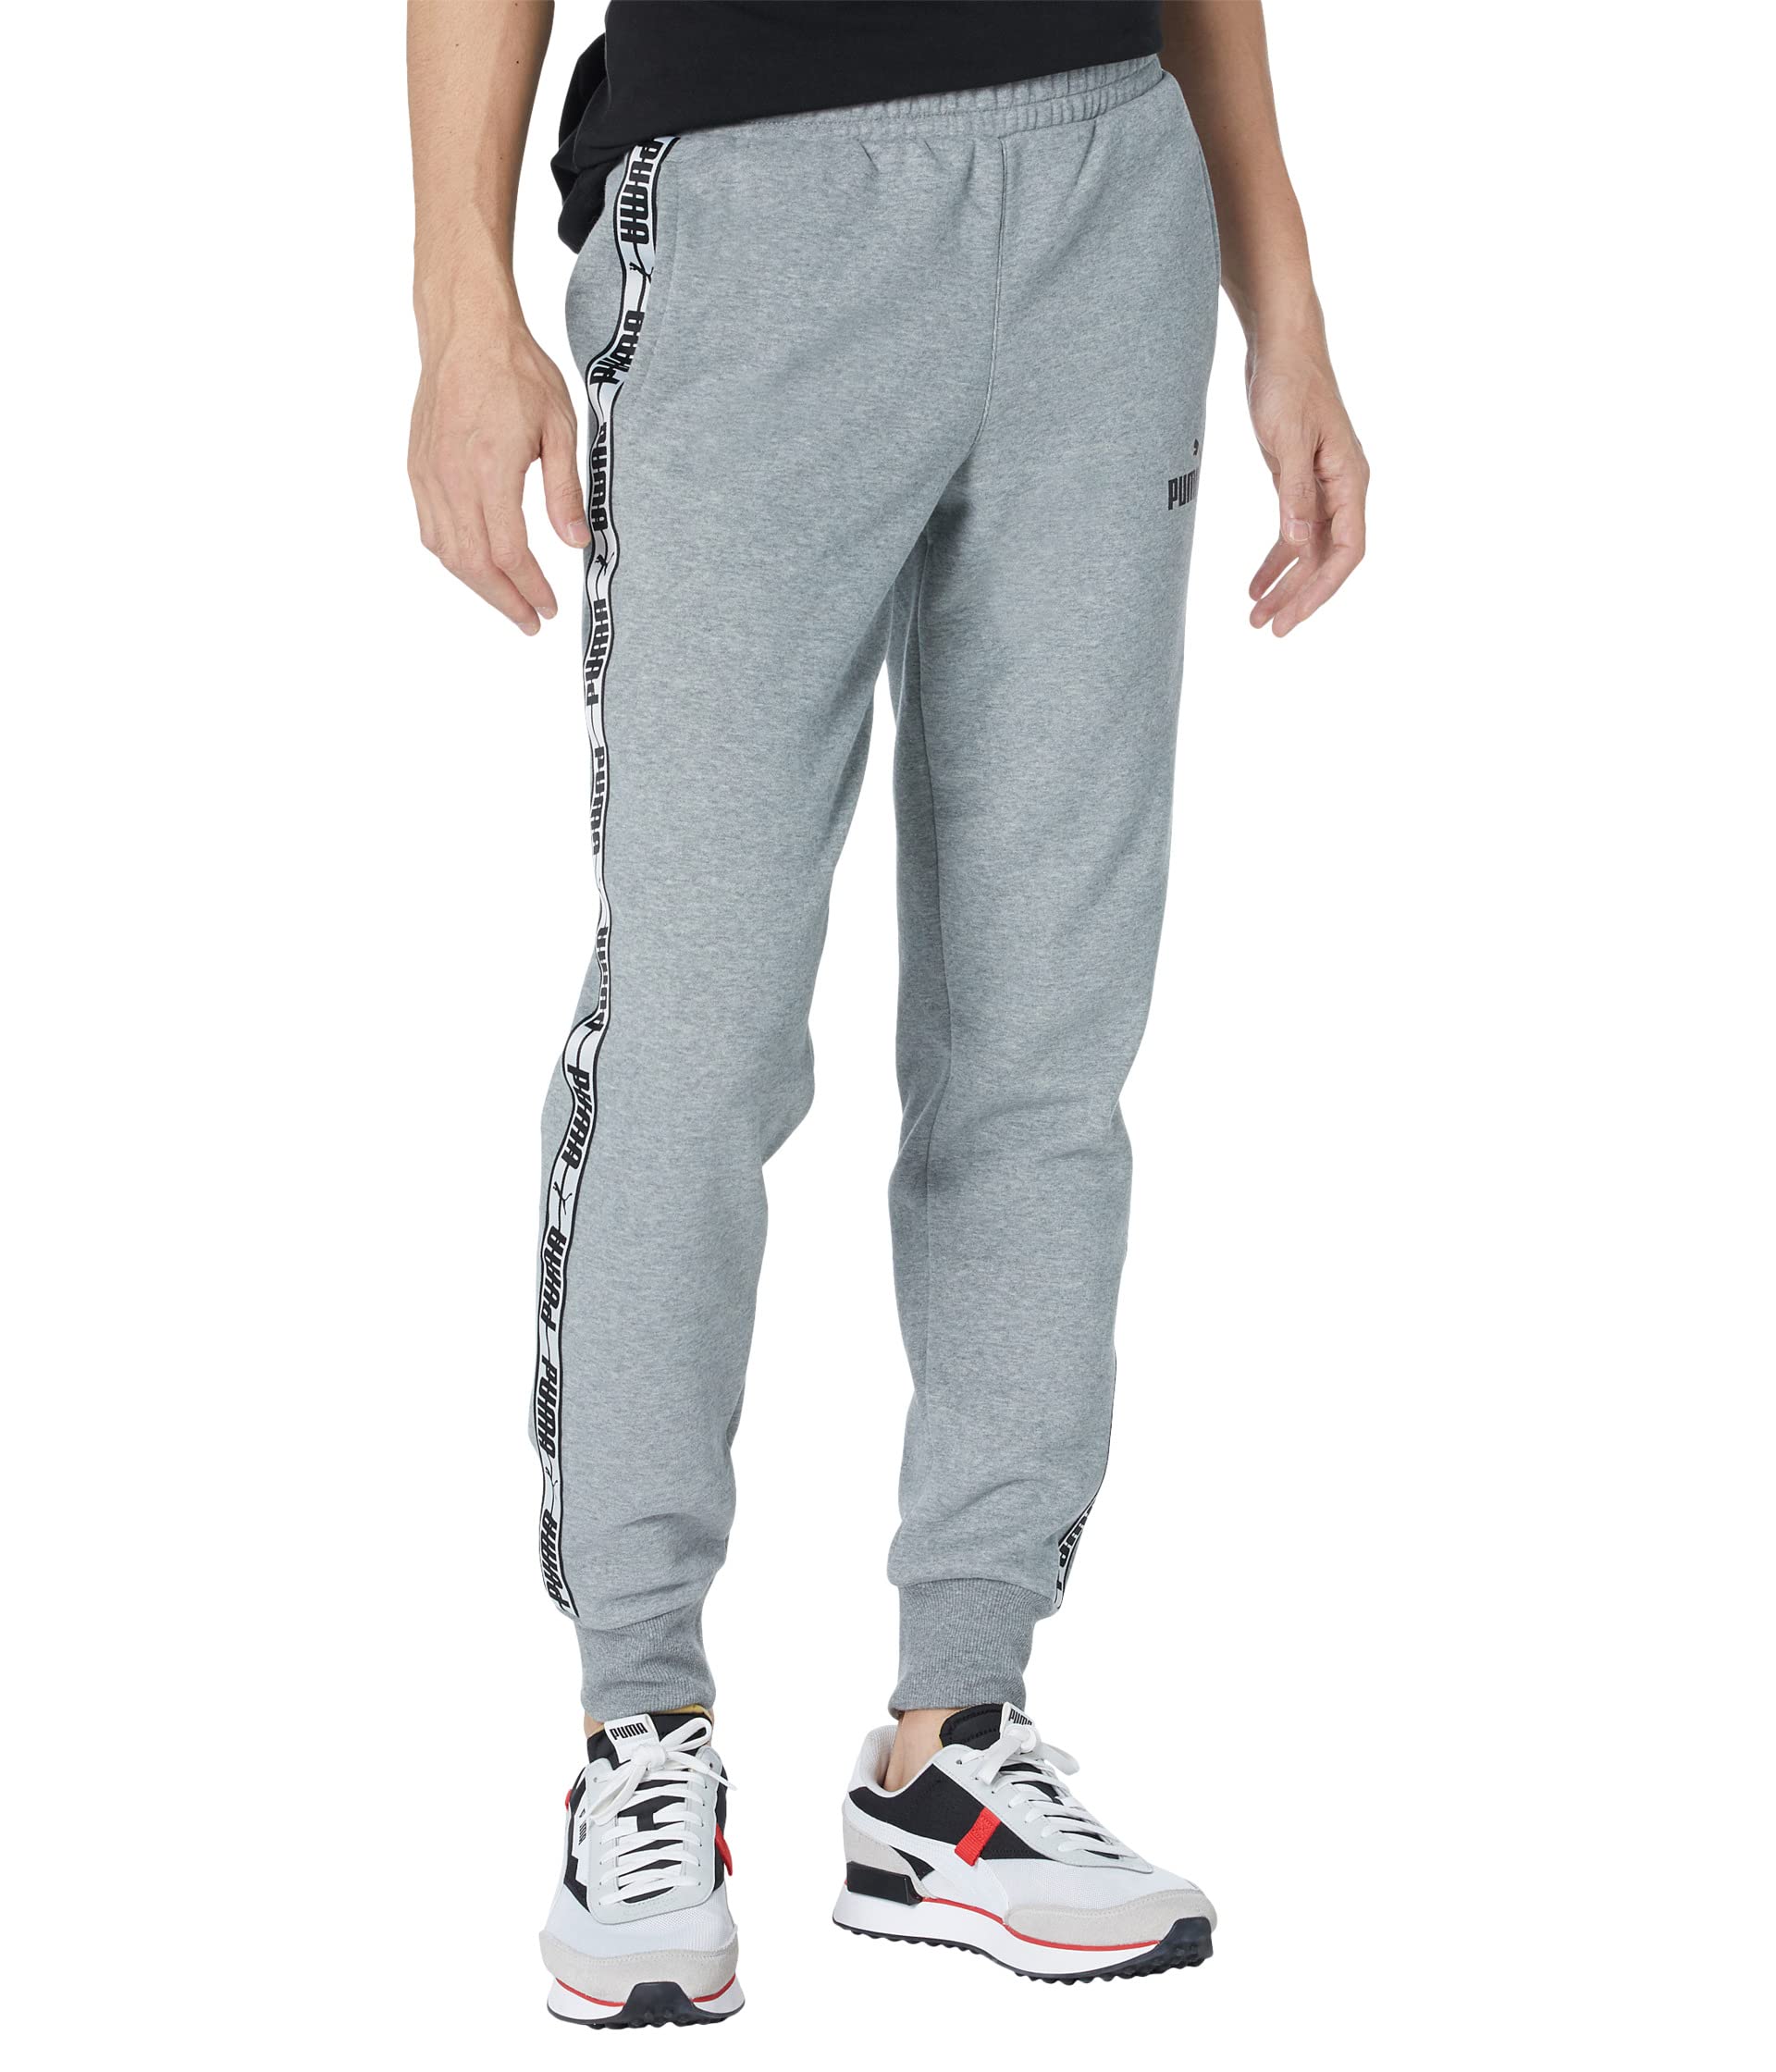 Мужские брюки спортивные Puma Taping Pants Fleece, серый футболка puma train cloudspun short sleeve tee цвет medium gray heather